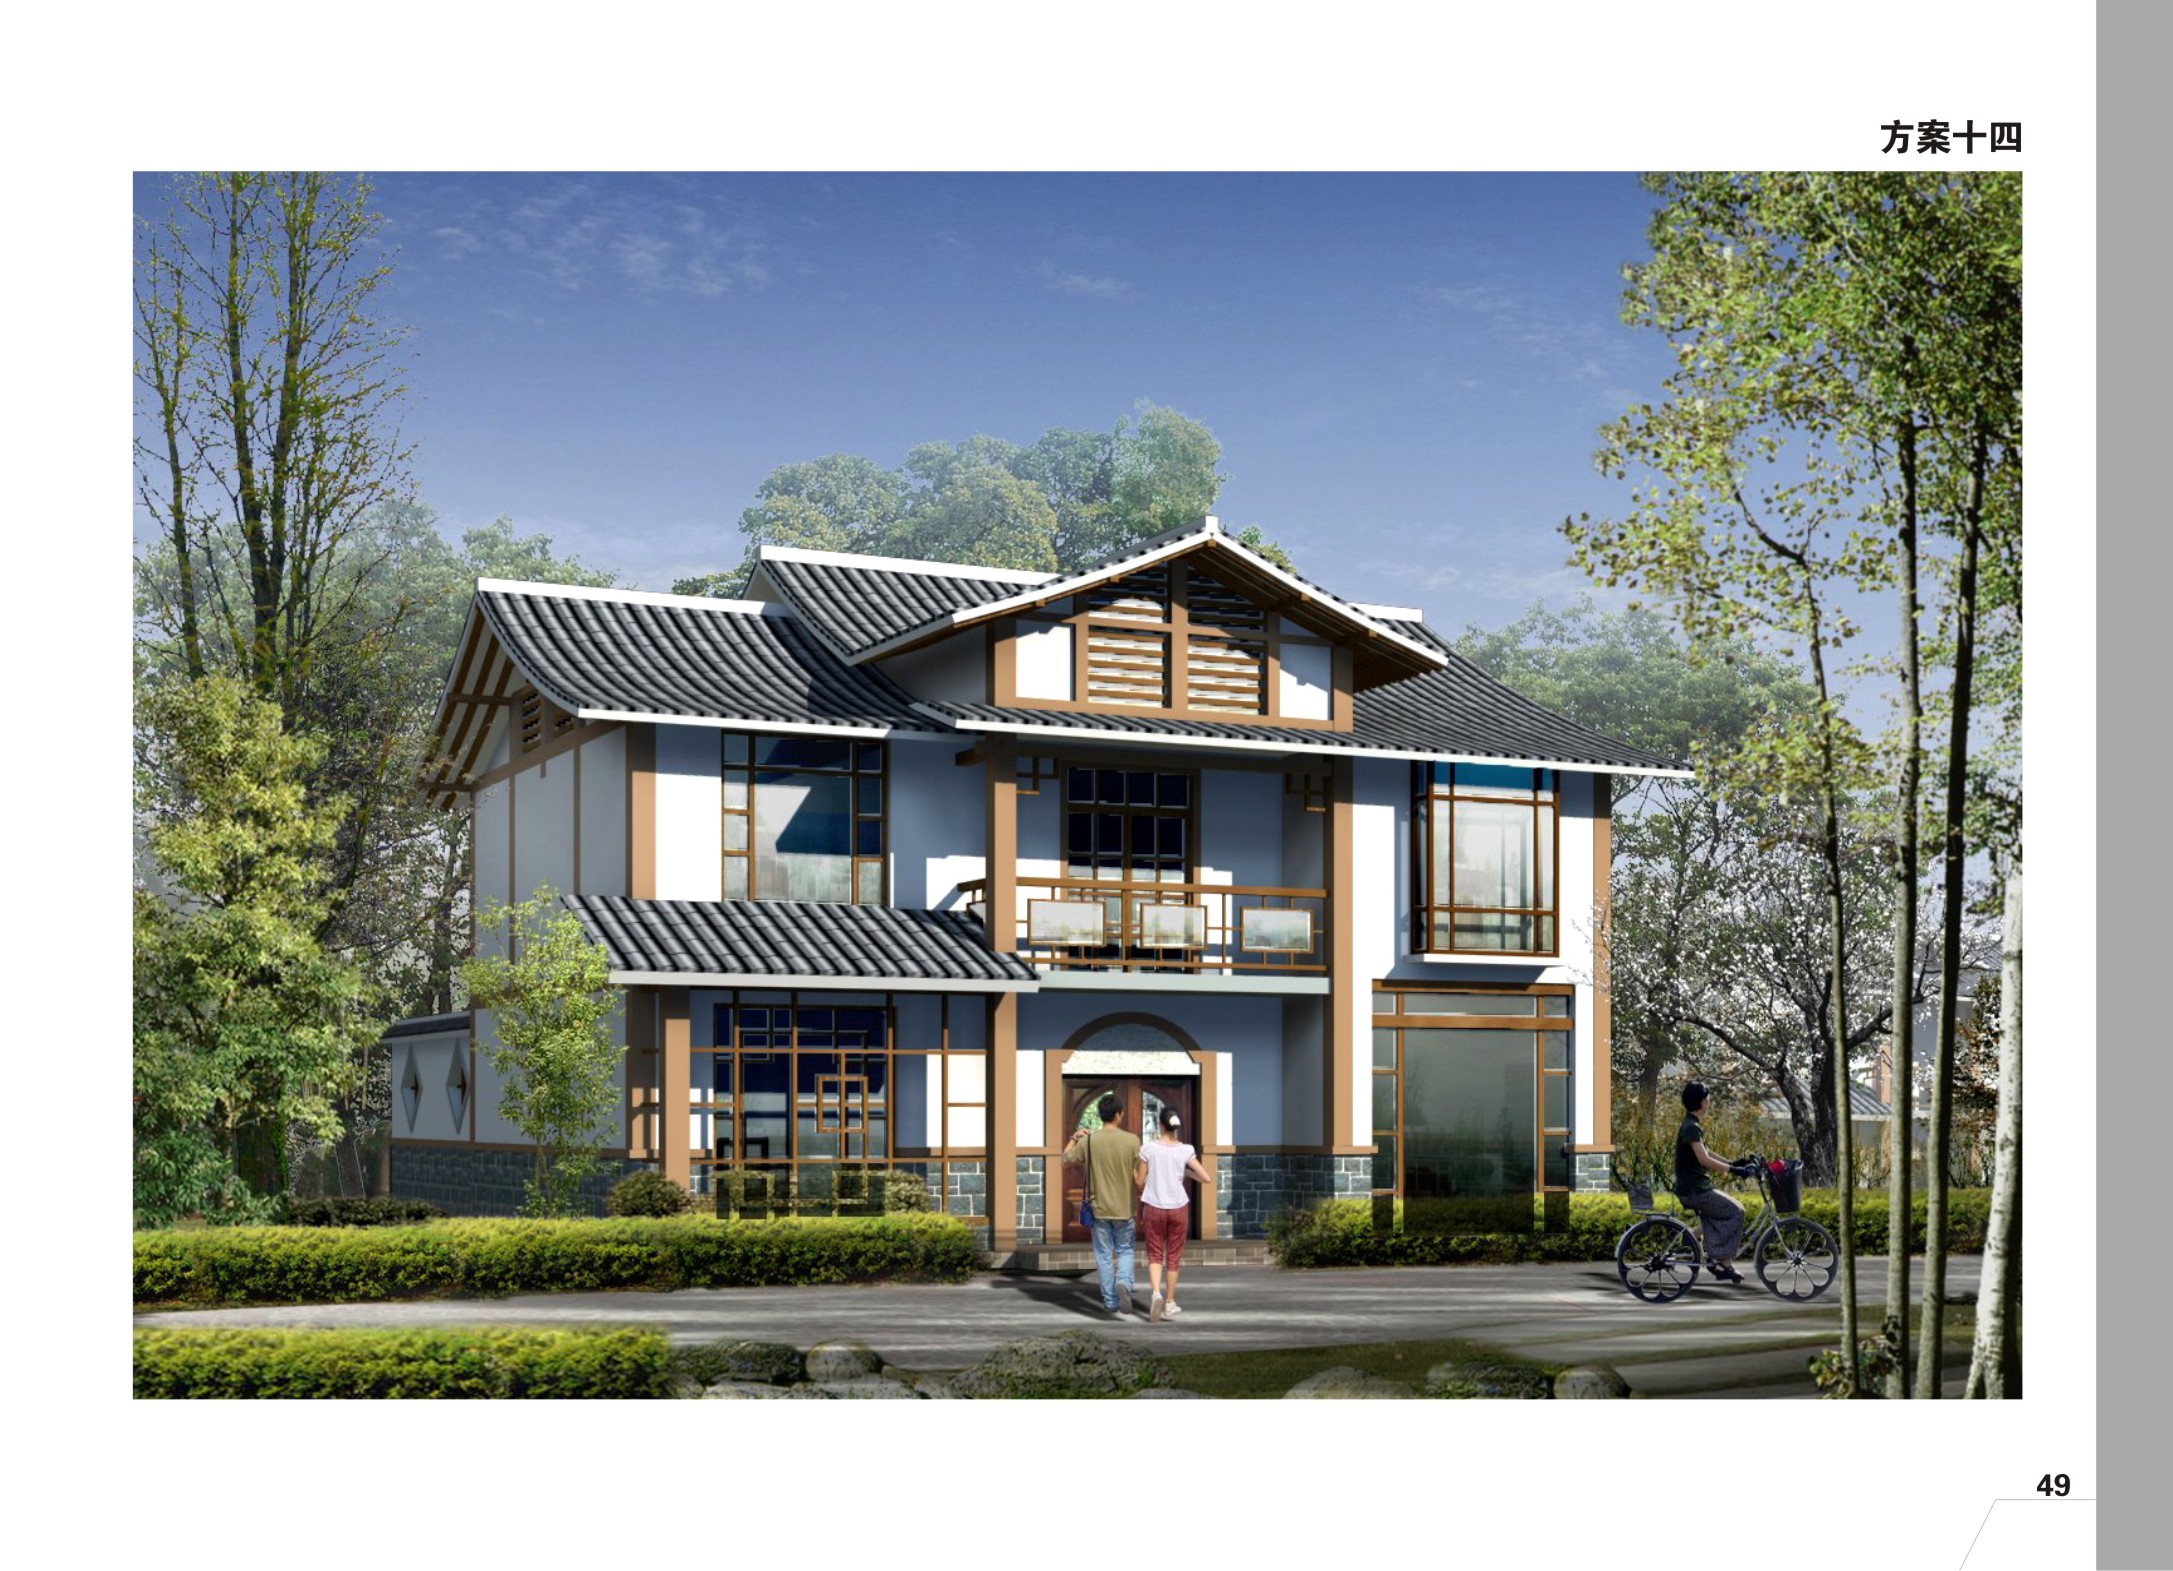 212.65平方米单家独院式砖混结构农村住宅设计图